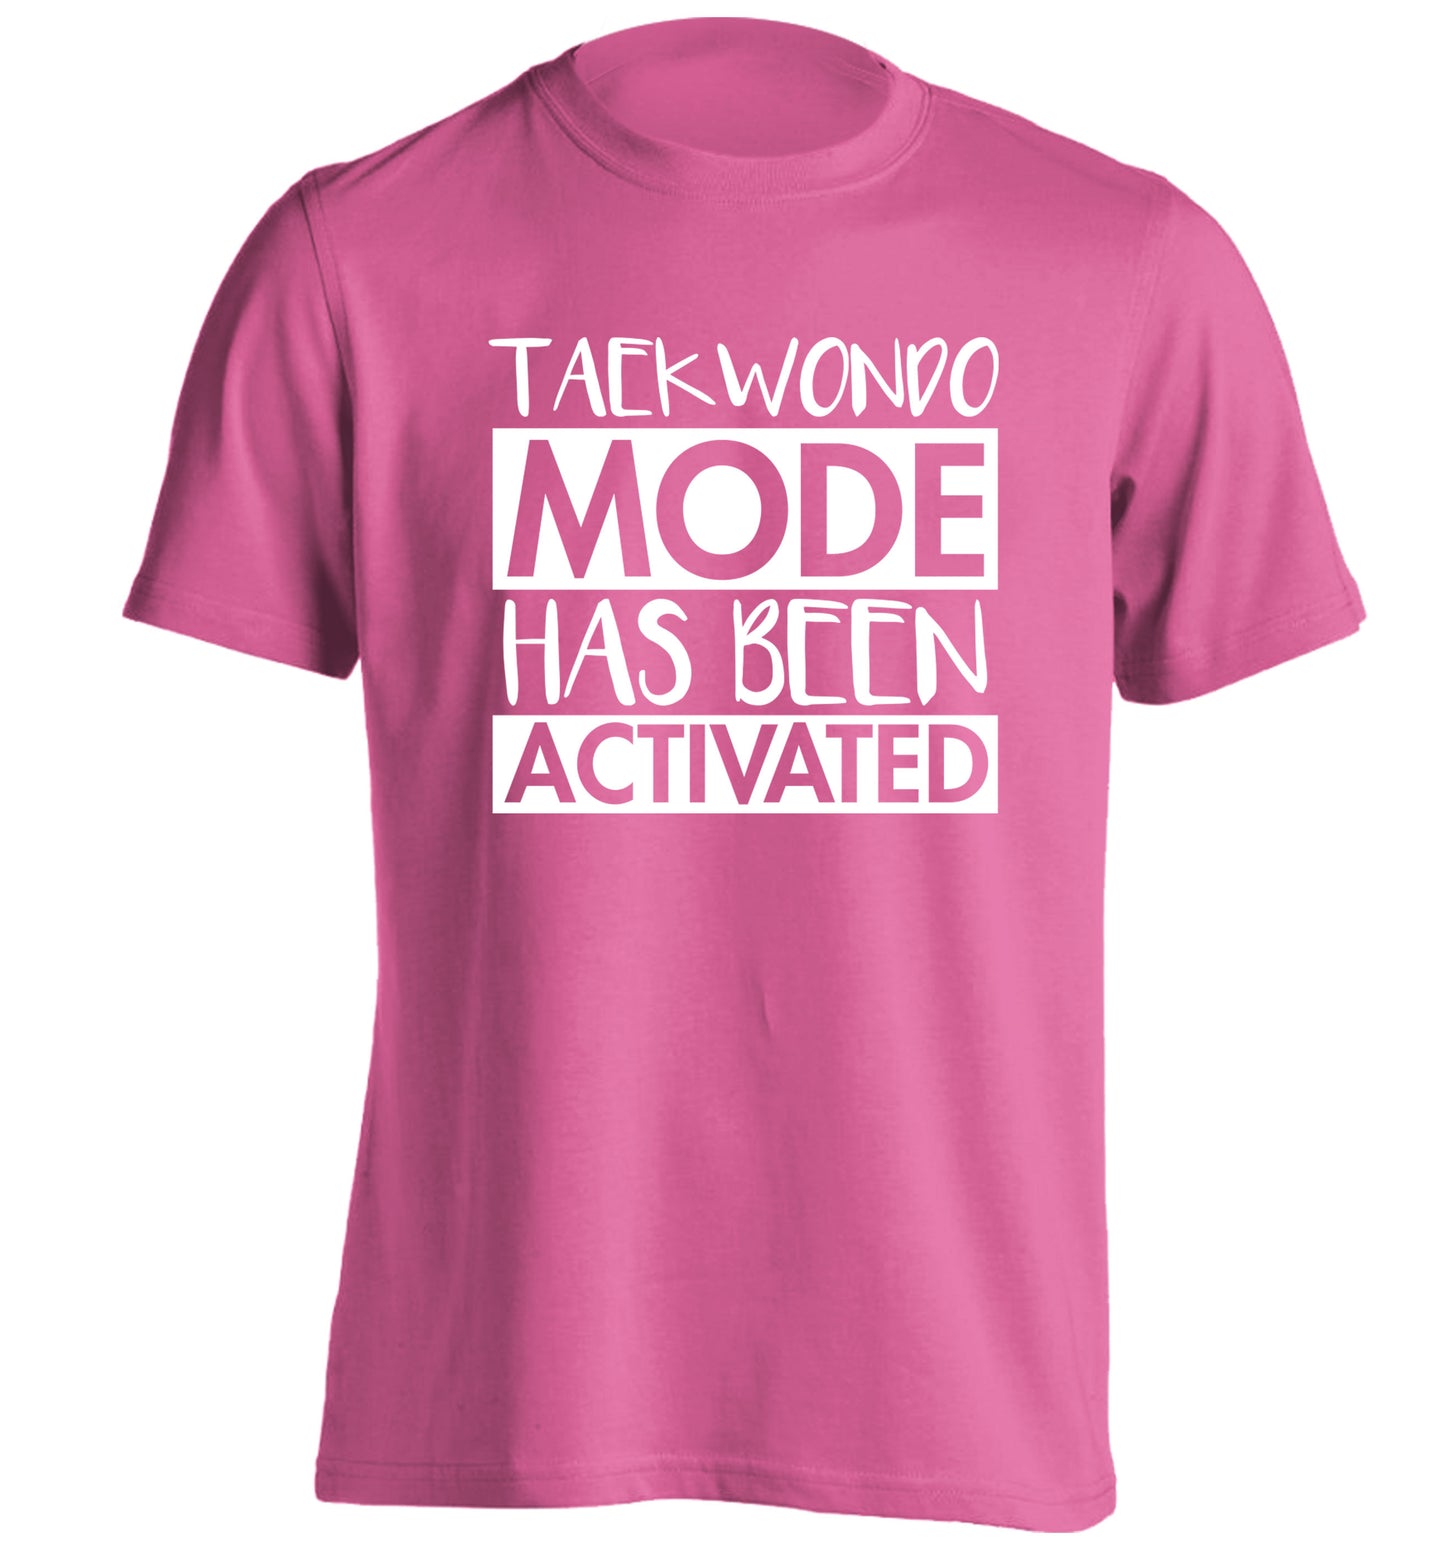 Taekwondo mode activated adults unisex pink Tshirt 2XL